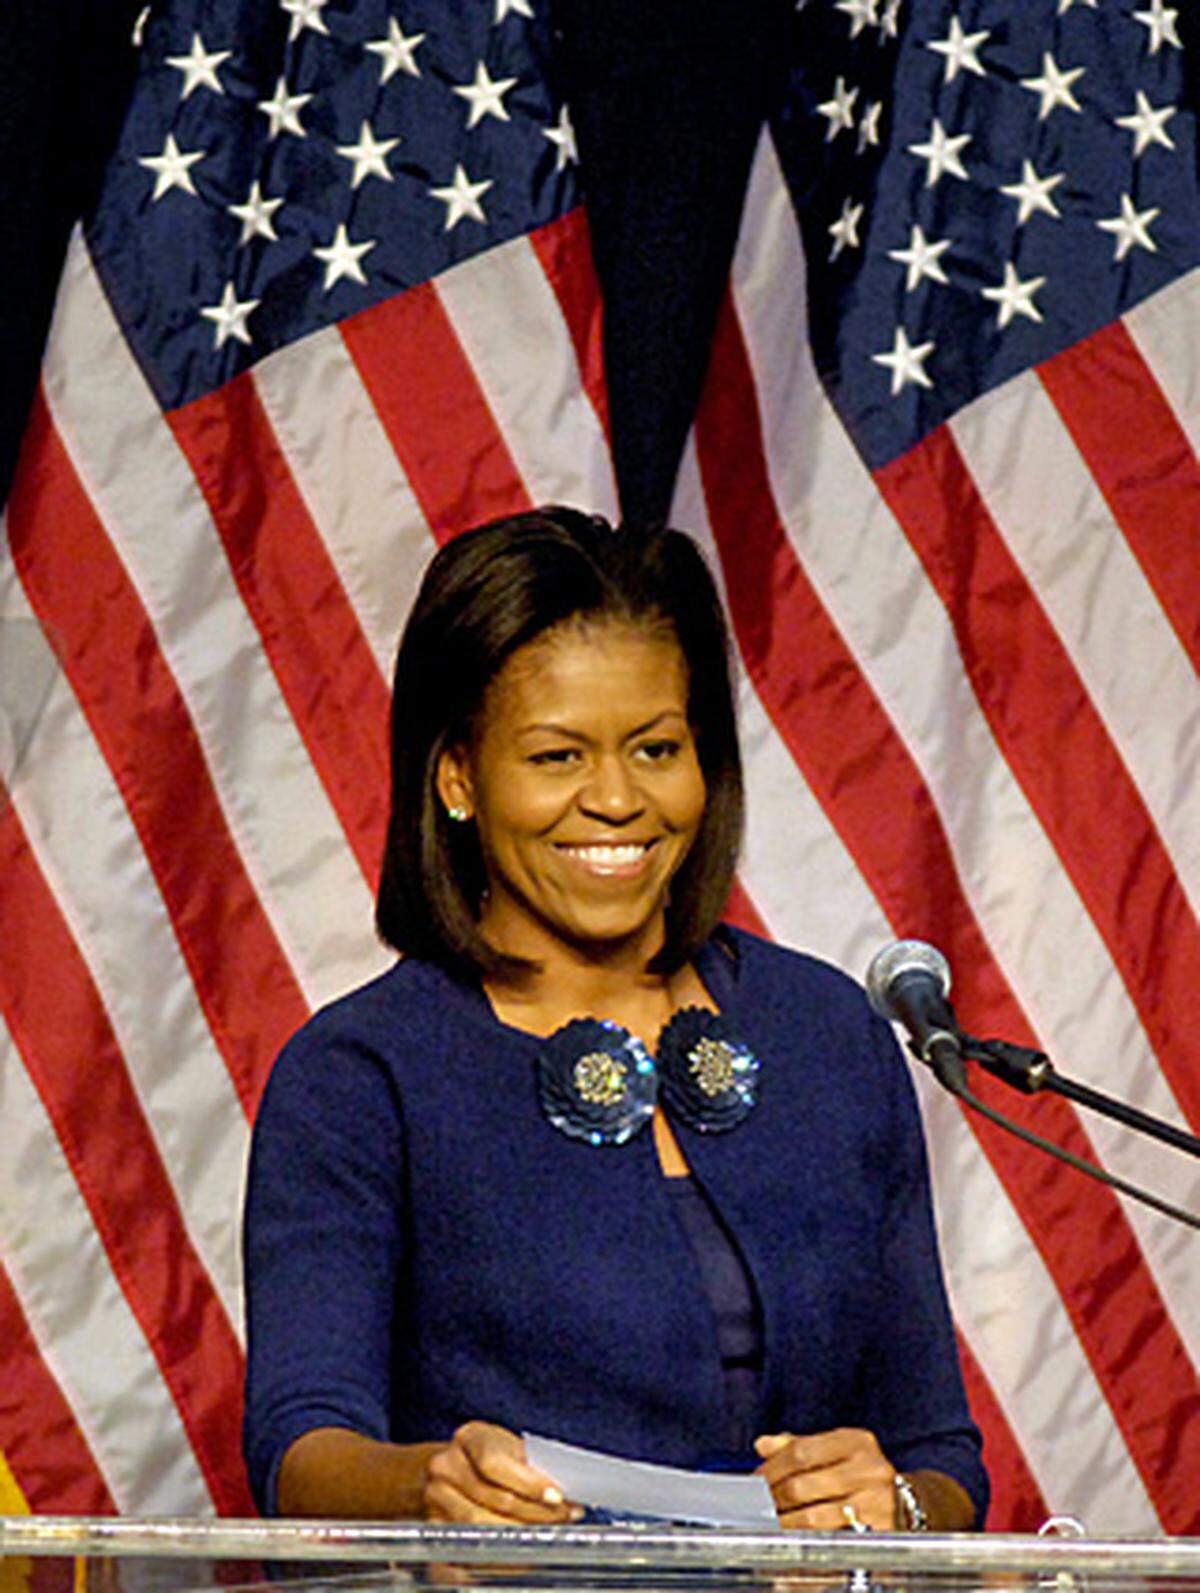 Michelle Obama musste sich nach der Wahl nicht erst mausern. Sie stammt aus einfachen Verhältnissen, und arbeitete sich nach ihrem Studium an den Eliteuniversitäten Princeton und Harvard hinauf bis in höchste Managerpositionen. Die großgewachsene Doktorin der Rechtswissenschaften gilt als charismatische Rednerin, der es keine Probleme bereitet, anzuecken.